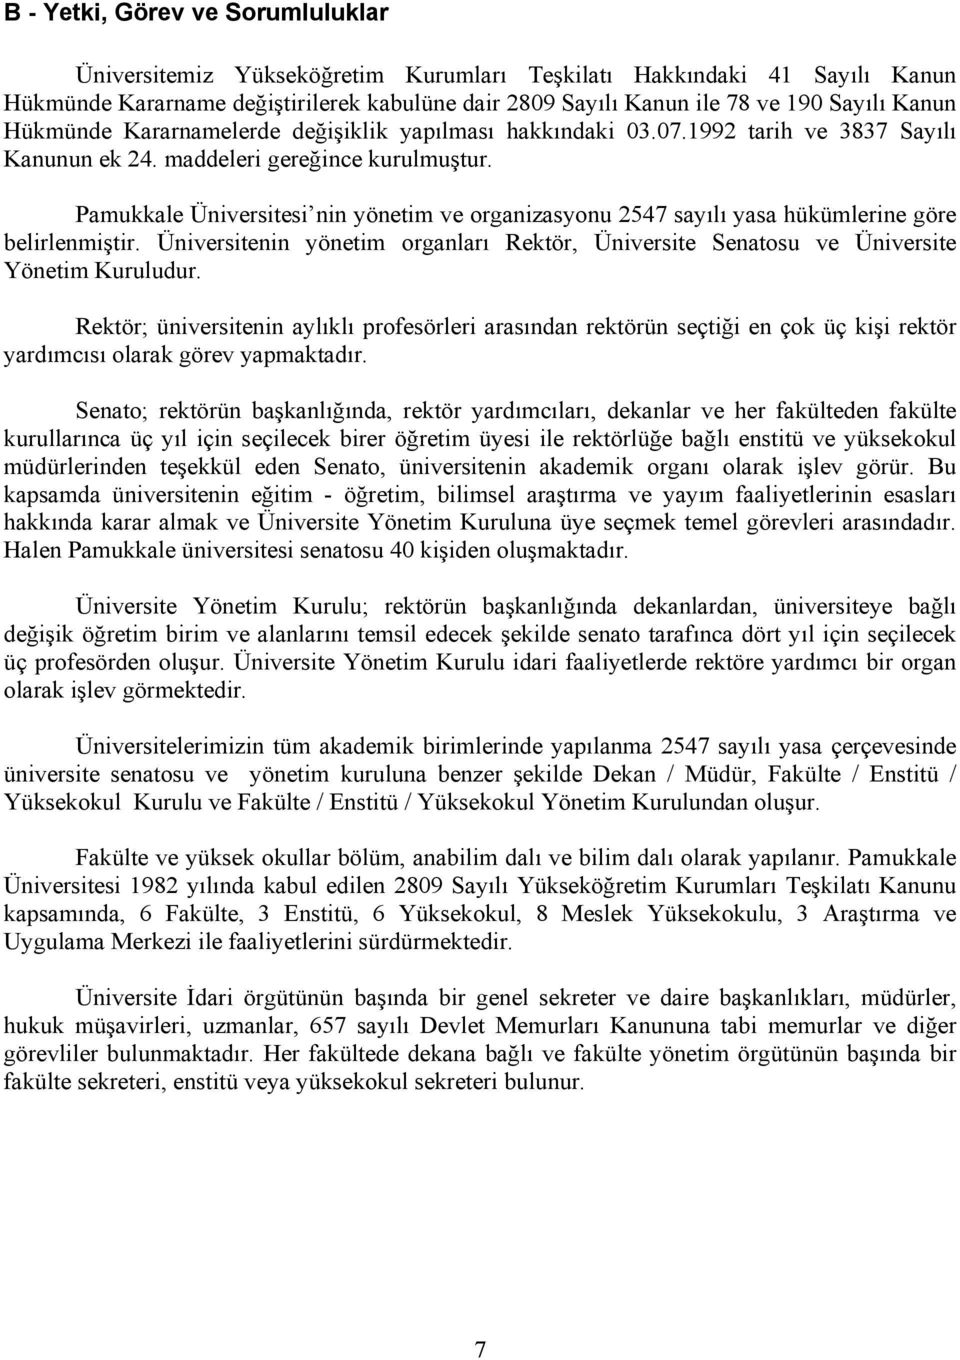 Pamukkale Üniversitesi nin yönetim ve organizasyonu 2547 sayılı yasa hükümlerine göre belirlenmiştir. Üniversitenin yönetim organları Rektör, Üniversite Senatosu ve Üniversite Yönetim Kuruludur.